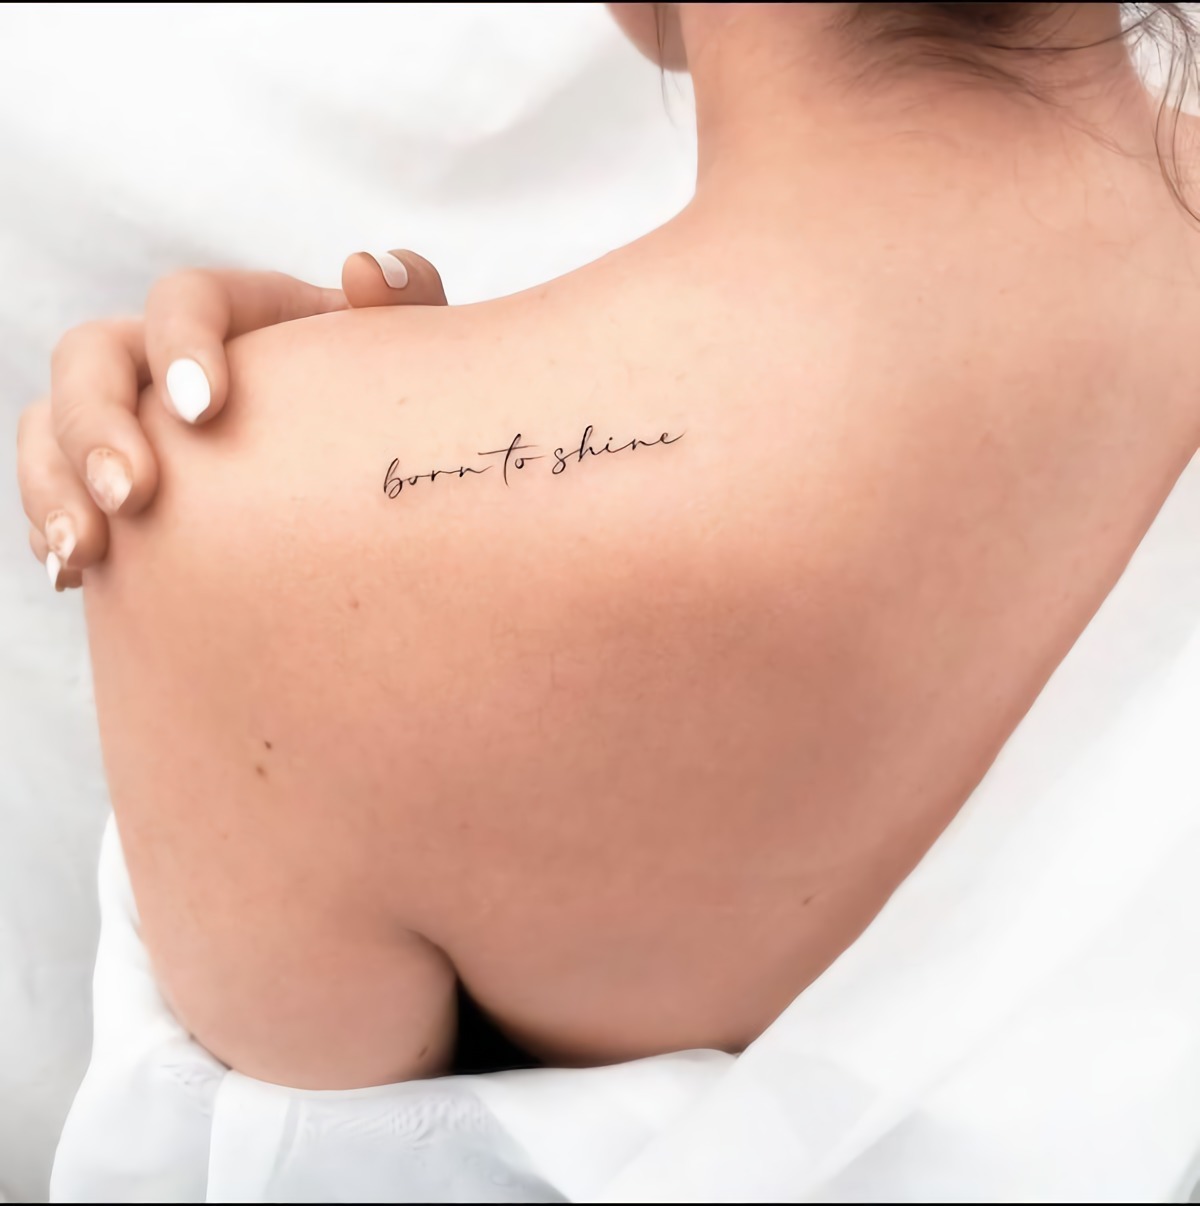 born to shine tatuaggio con scritta in inglese tattoo schiena donna